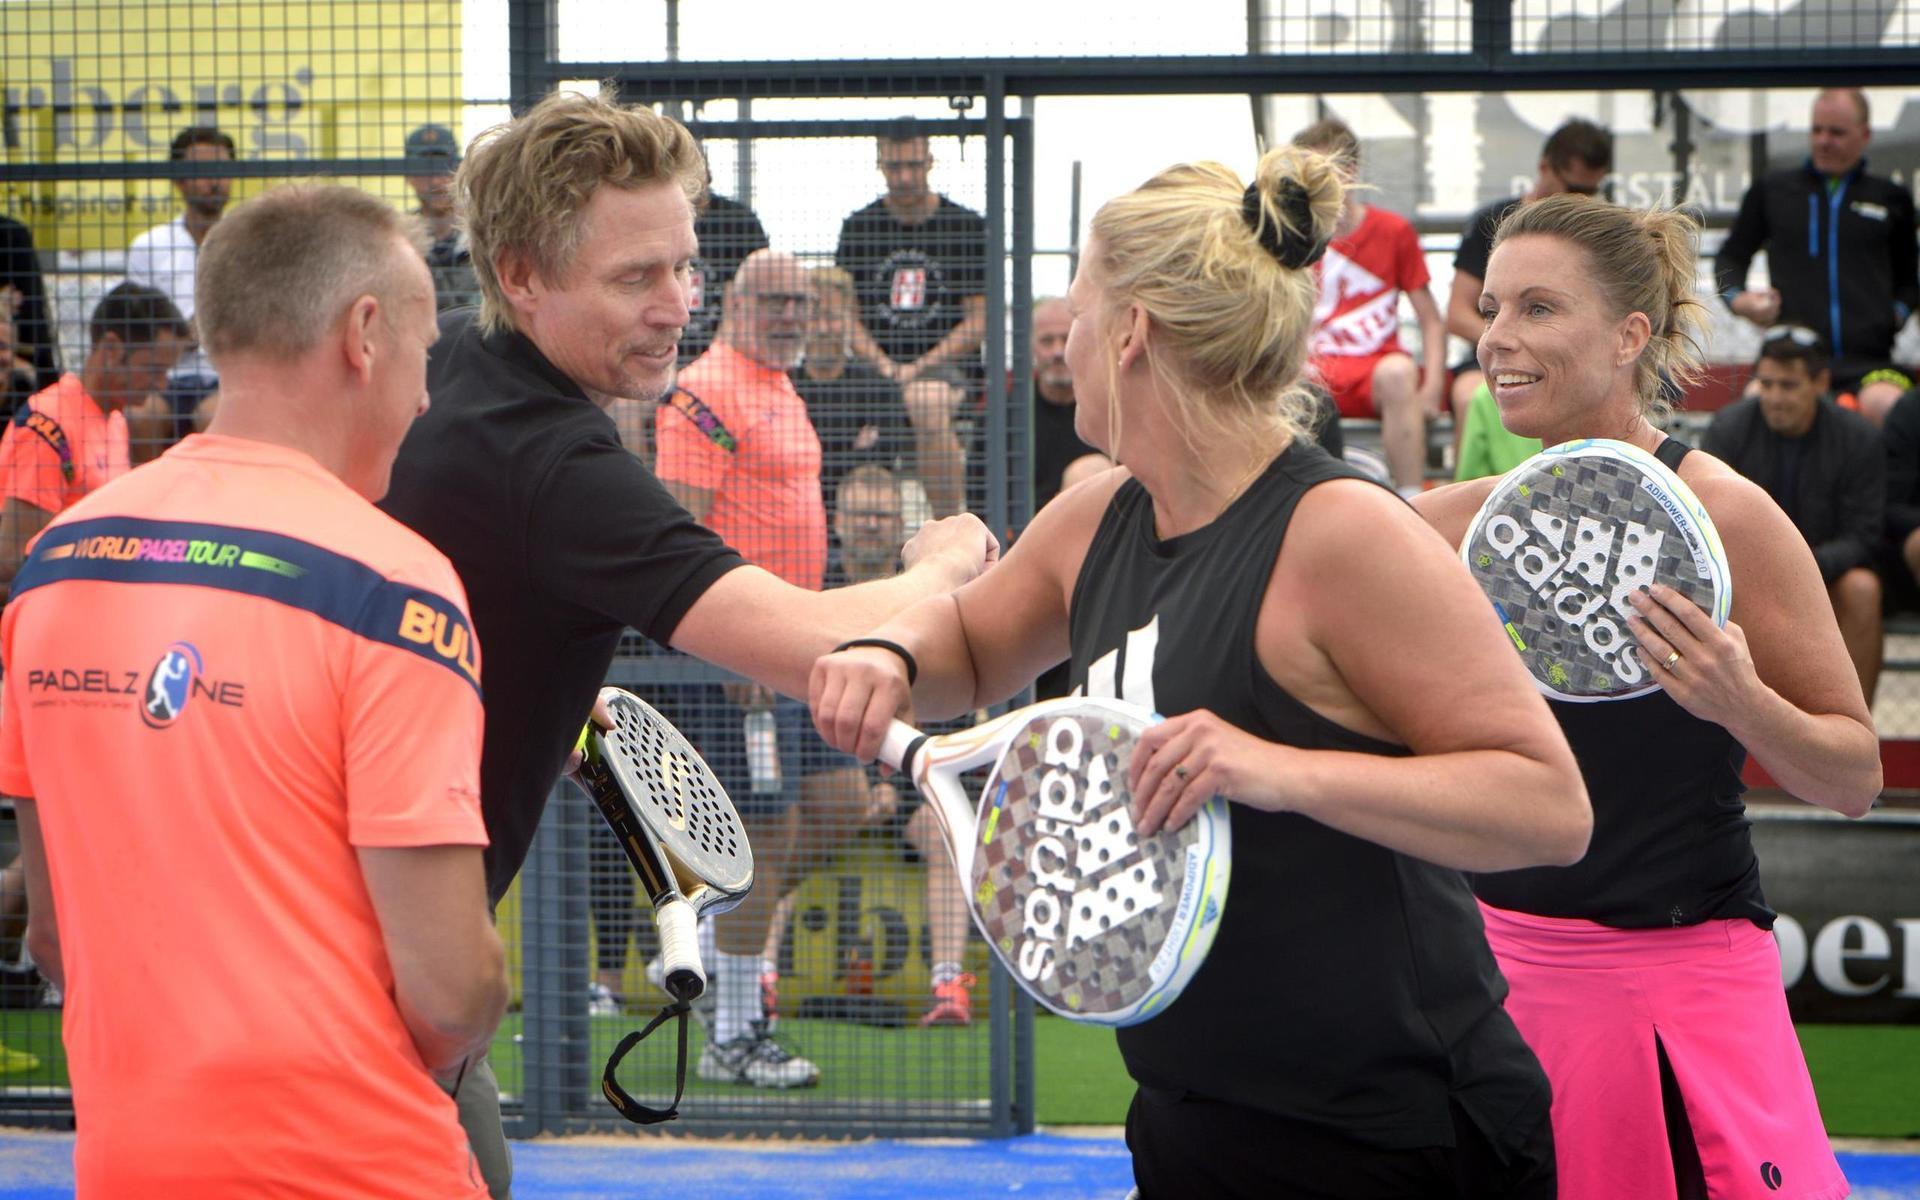 Eva-Lena Svensson och Nina Fischer vann invigningsmatchen mot Jörgen Persson och Tomas Olsson